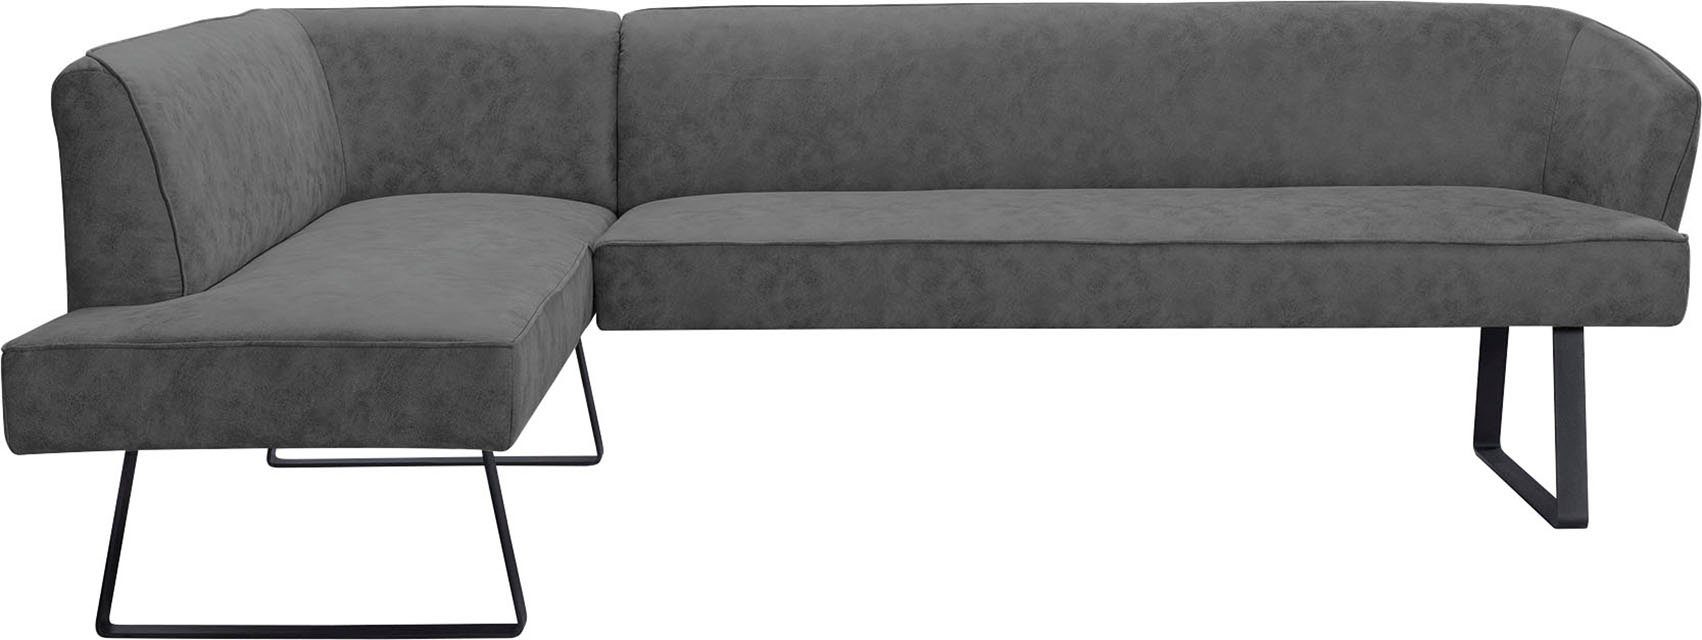 Eckbank - Keder verschiedenen mit Americano, sofa Bezug in und exxpo Metallfüßen, Qualitäten fashion